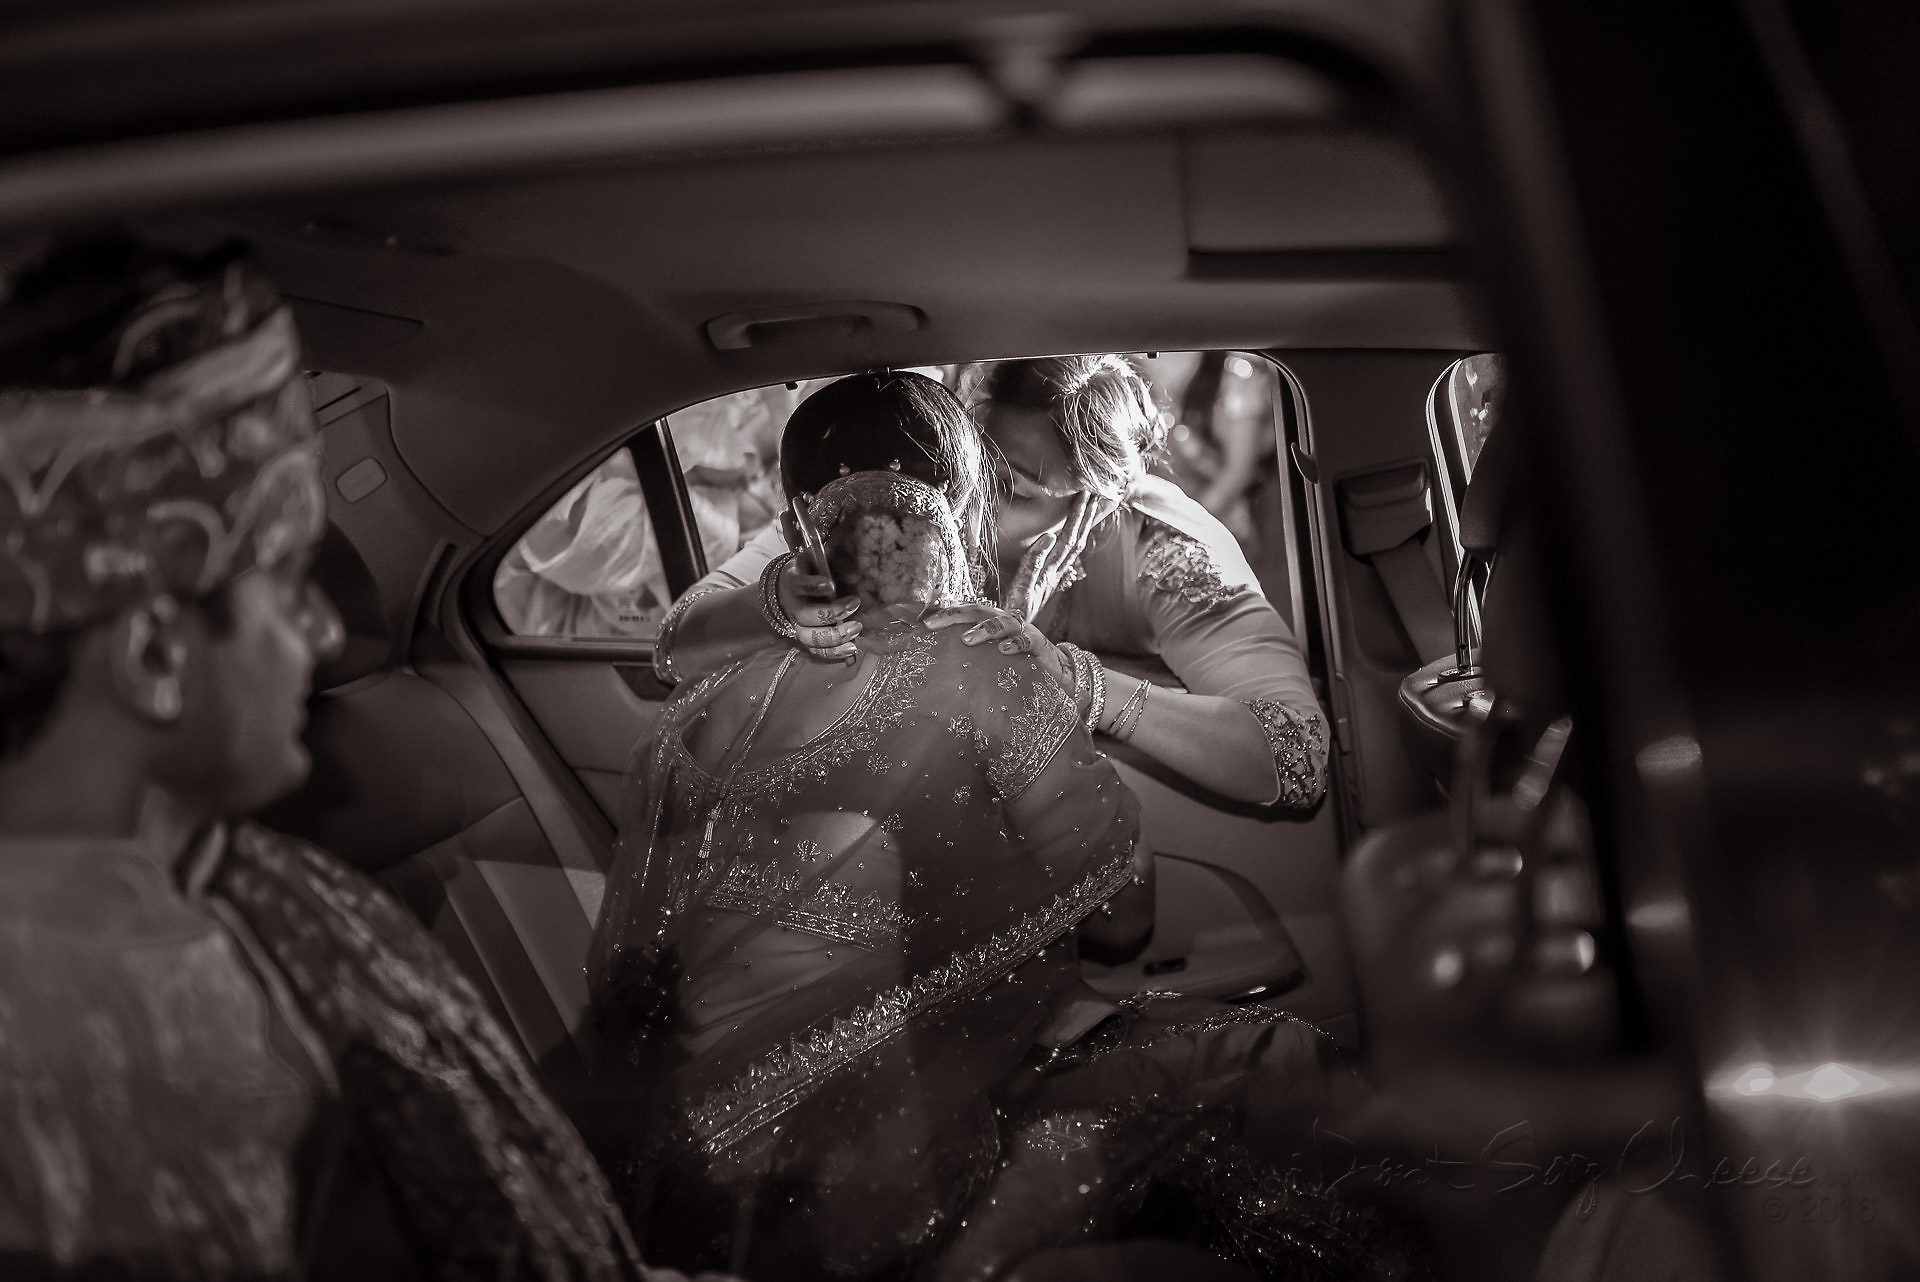 candid wedding photographer in india - Gaurav Gupta IDONTSAYCHEESE